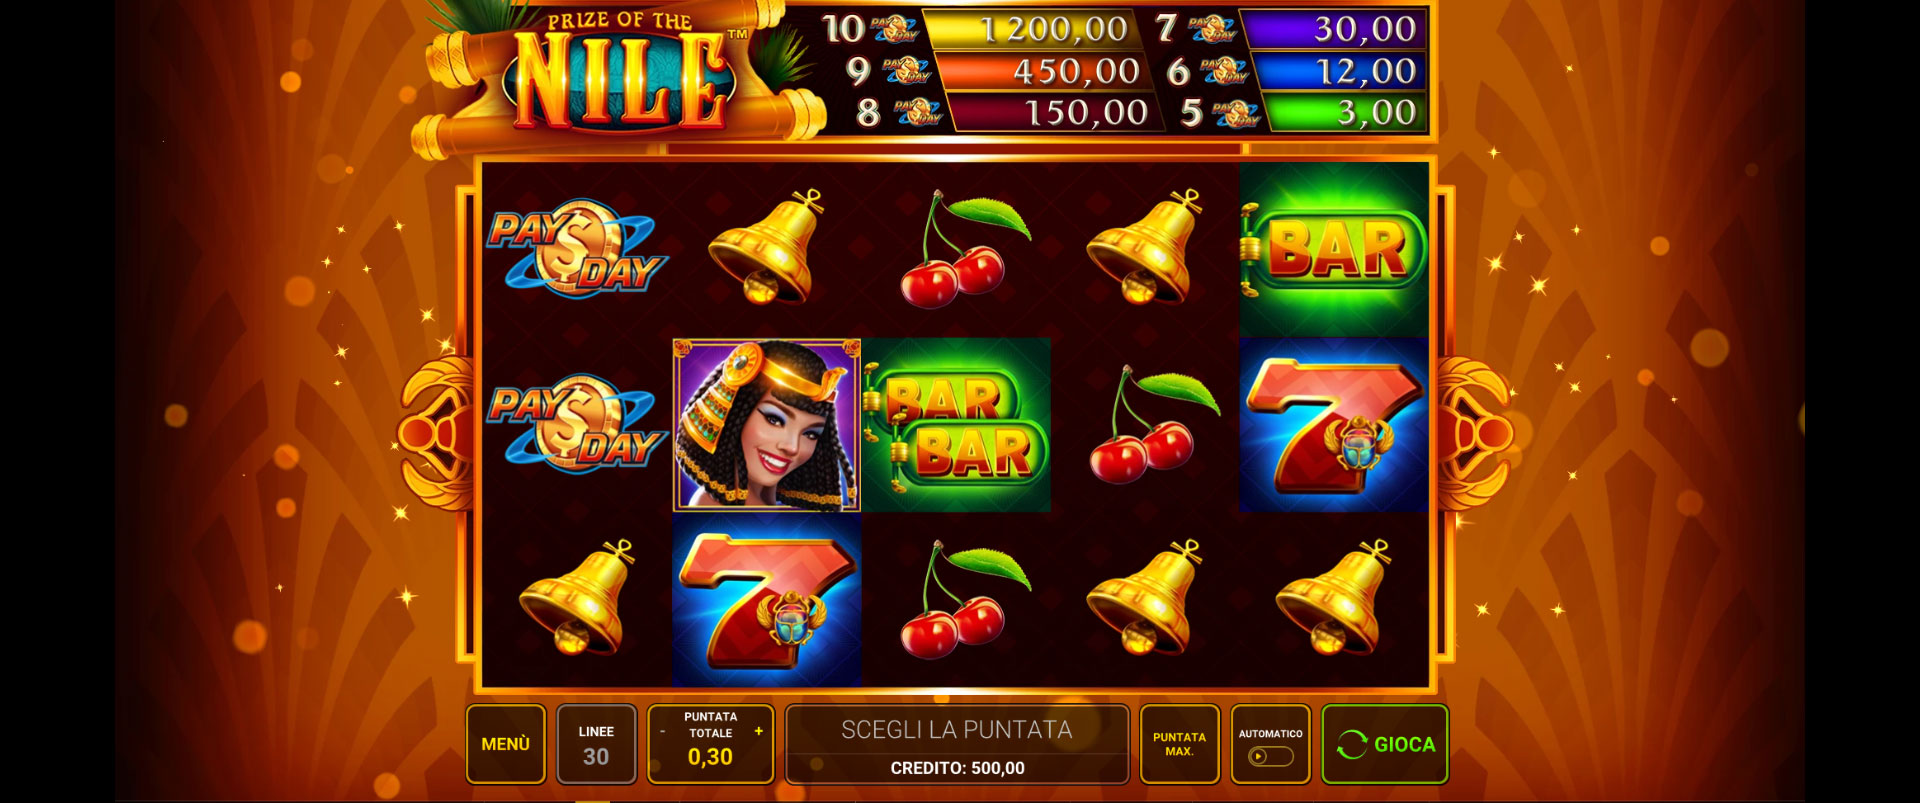 griglia del gioco slot machine prize of the nile